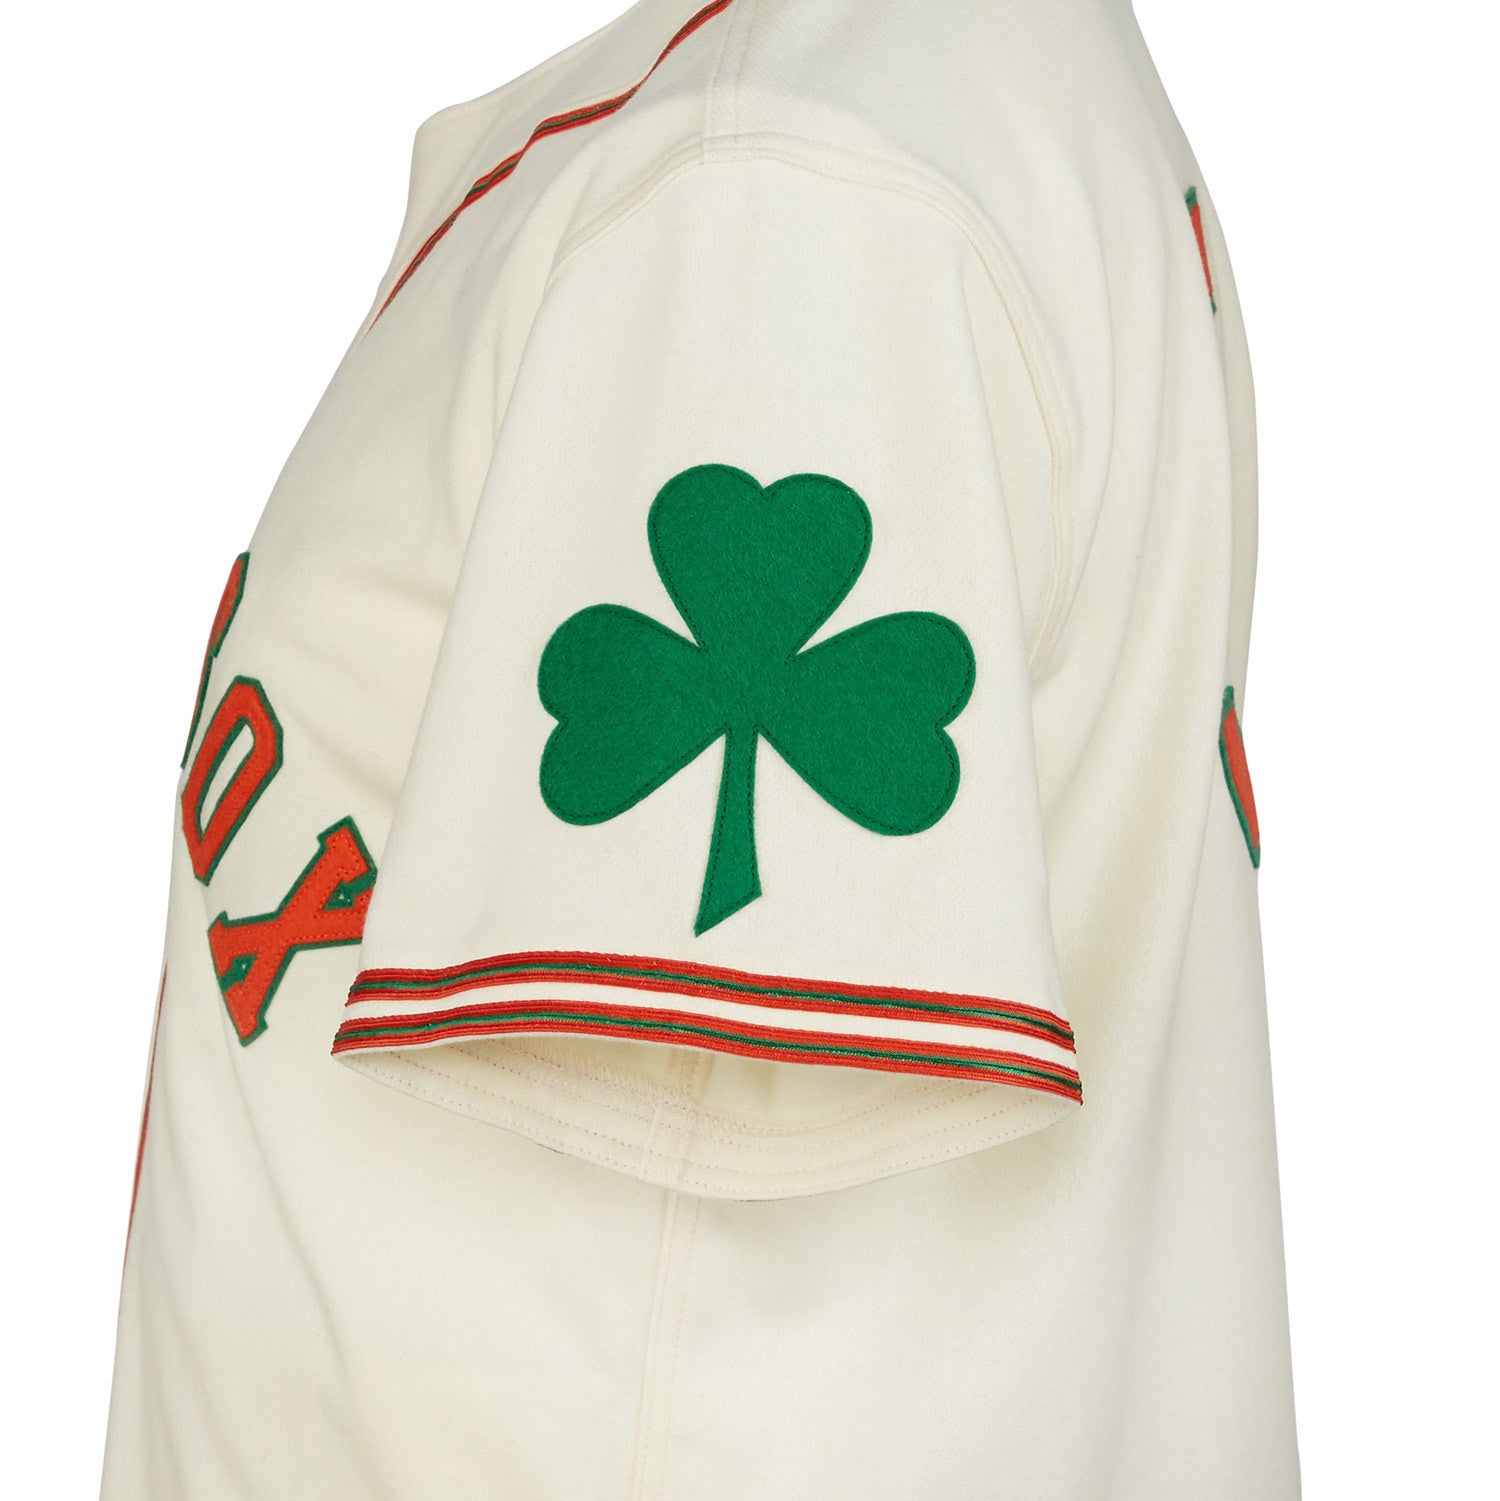 Ebbets Field Flannels Dublin Green Sox 1952 Road Jersey